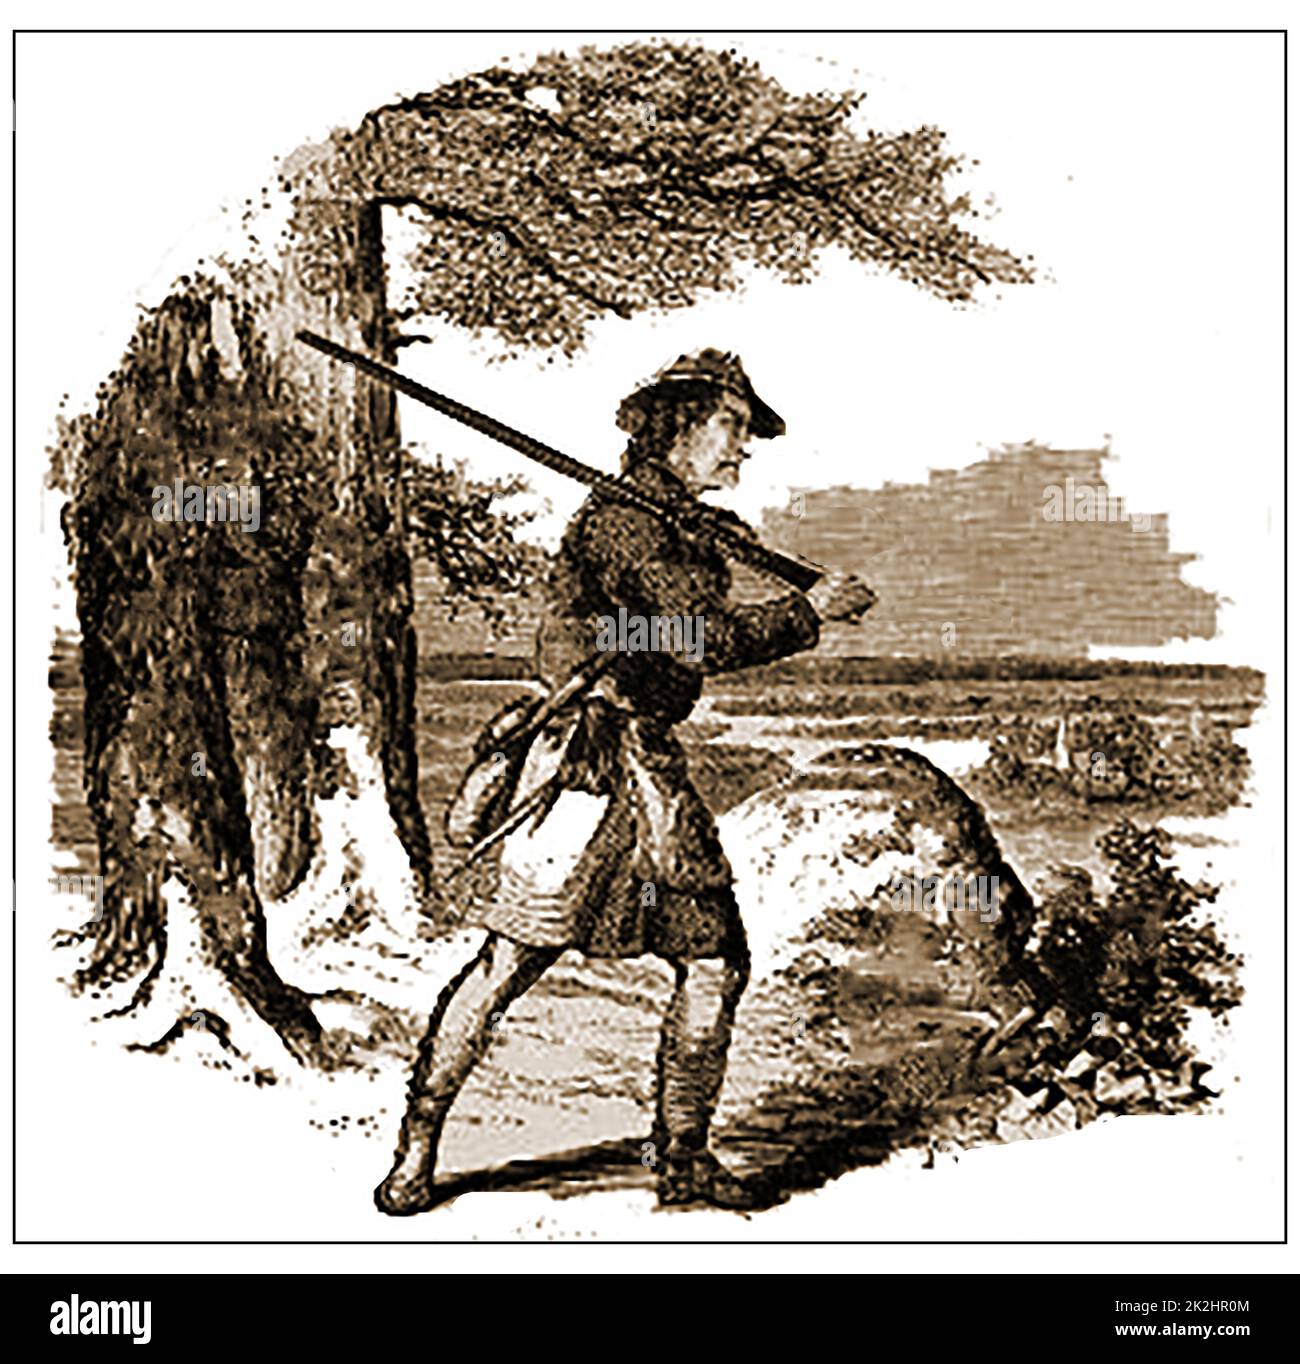 Ein Stich aus dem 19.. Jahrhundert, der einen typischen amerikanischen Frontiermann zeigt, der in den Indianerkriegen gegen neue Siedler eingesetzt wurde. Stockfoto